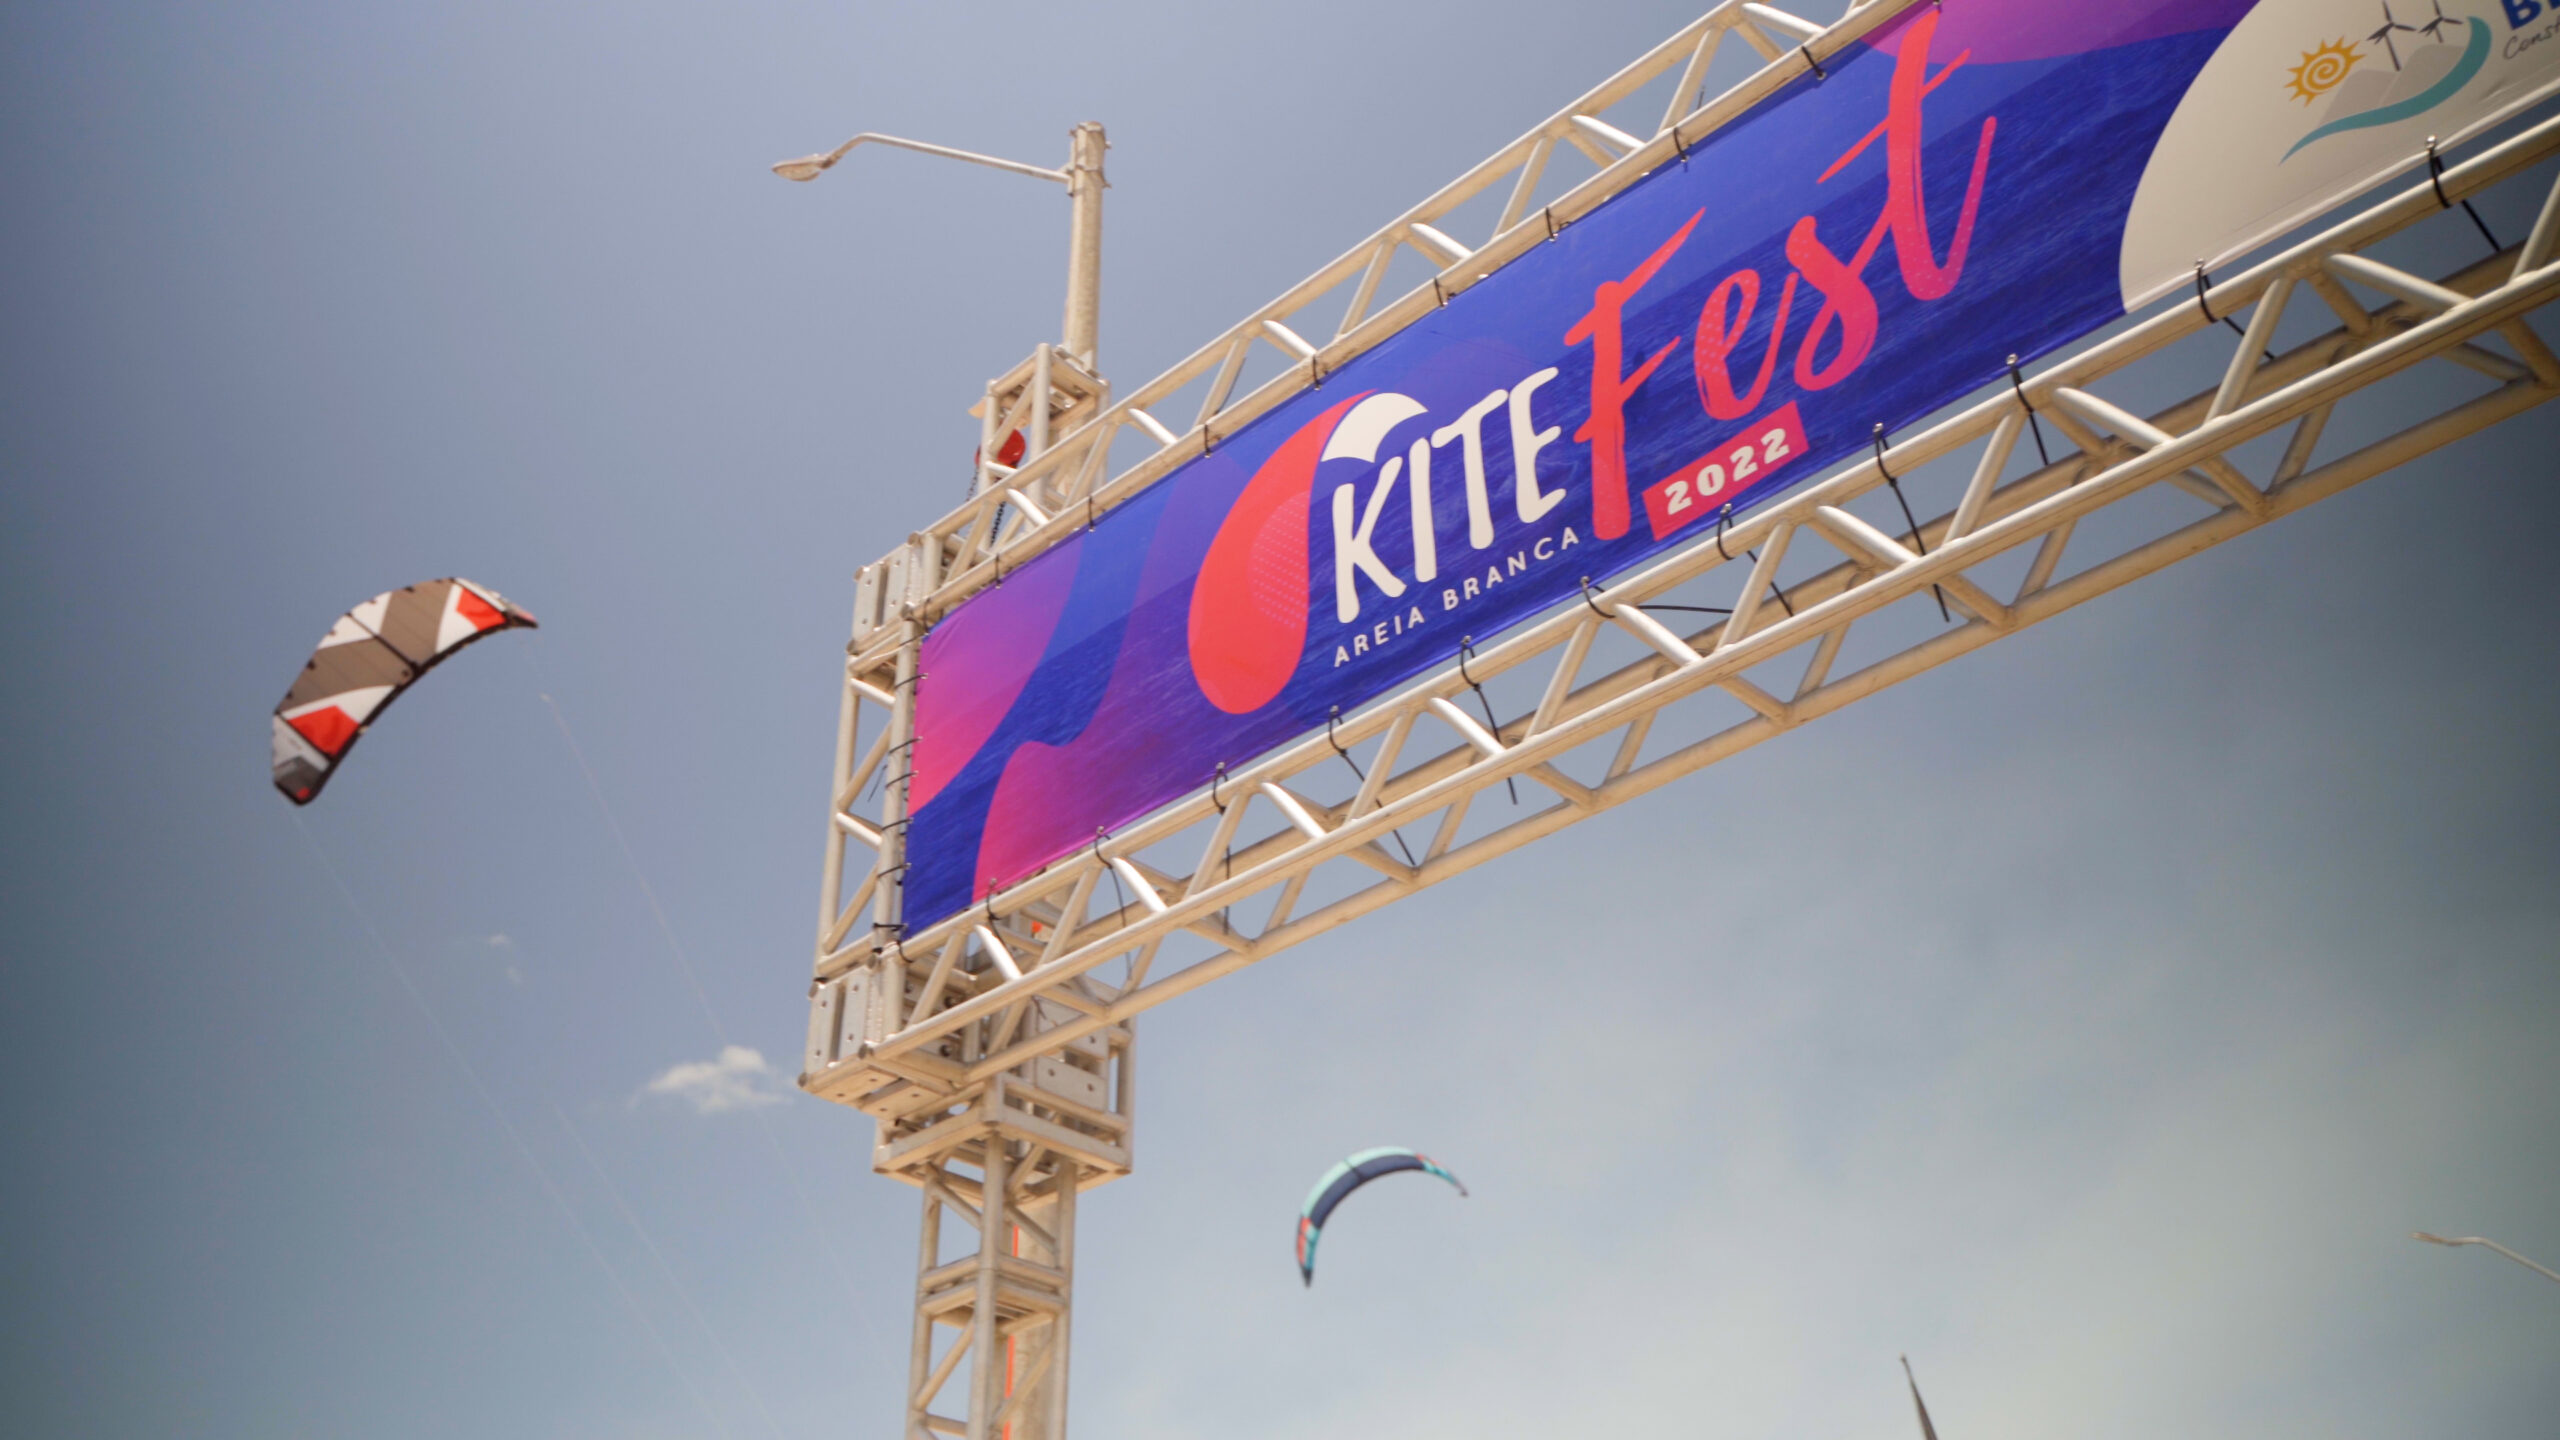 Kitefest 2022 termina com recorde de público e consagra Areia Branca como paraíso do kitesurf